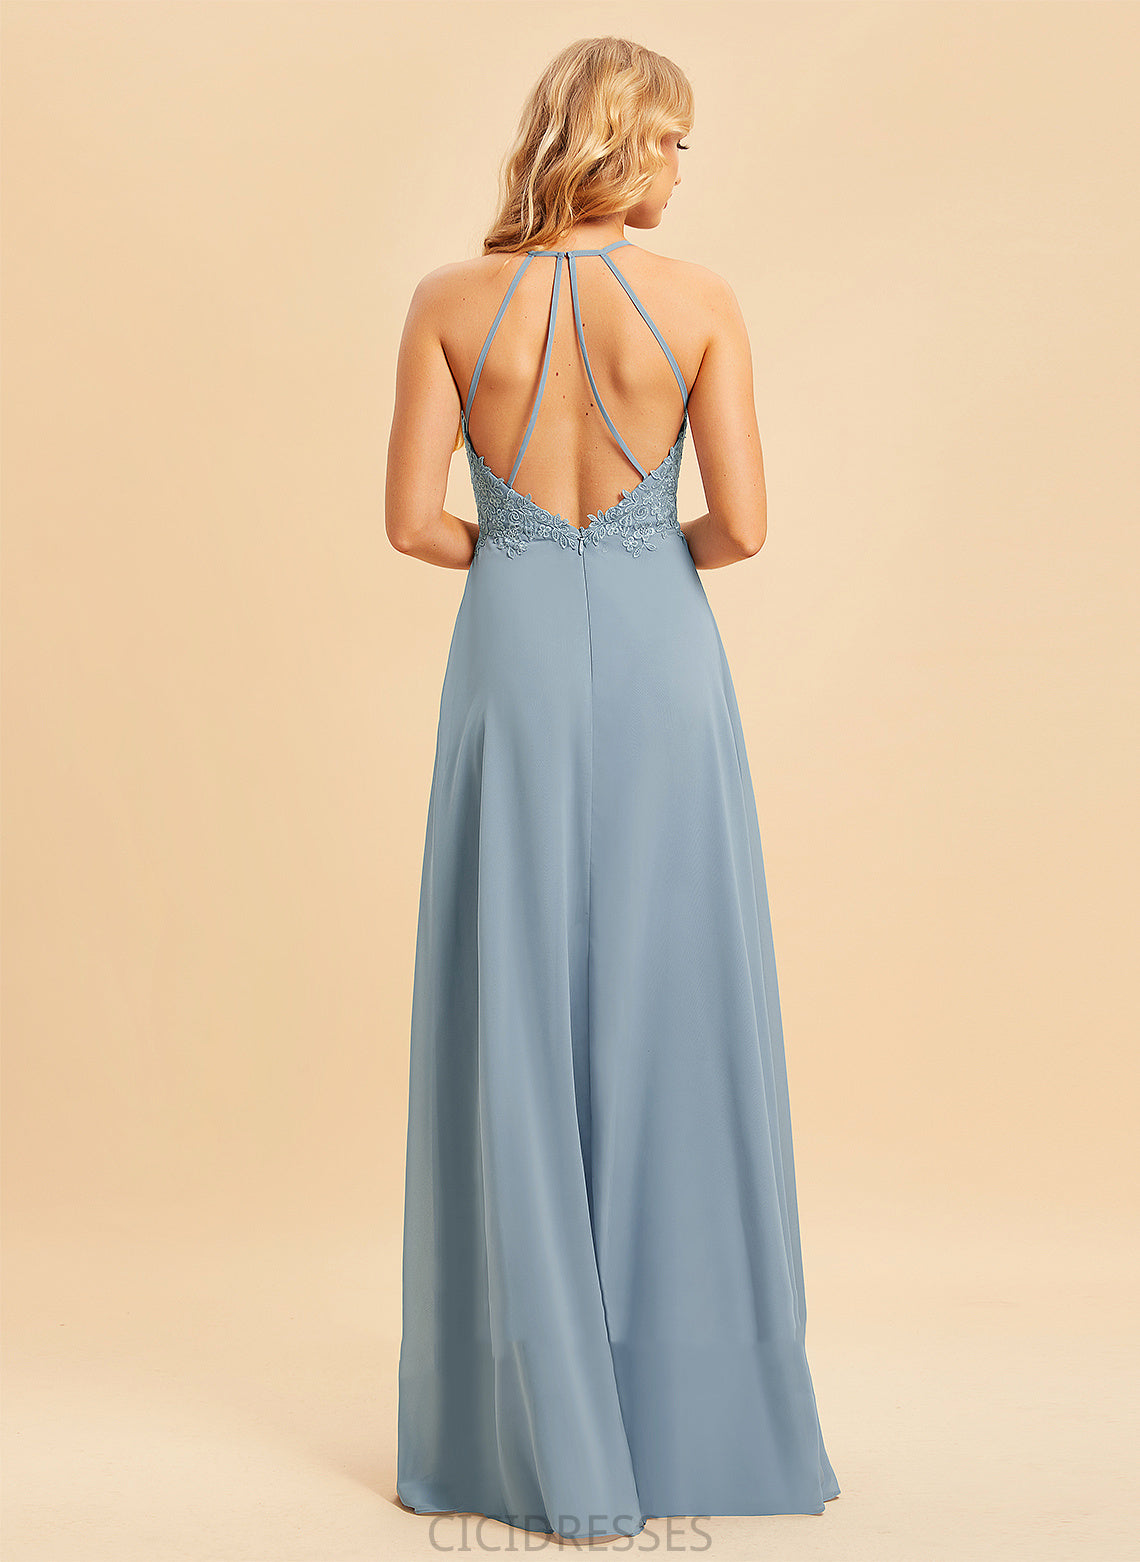 Neckline Fabric Length V-neck SplitFront Floor-Length Embellishment A-Line Silhouette Lace Precious Knee Length Bridesmaid Dresses